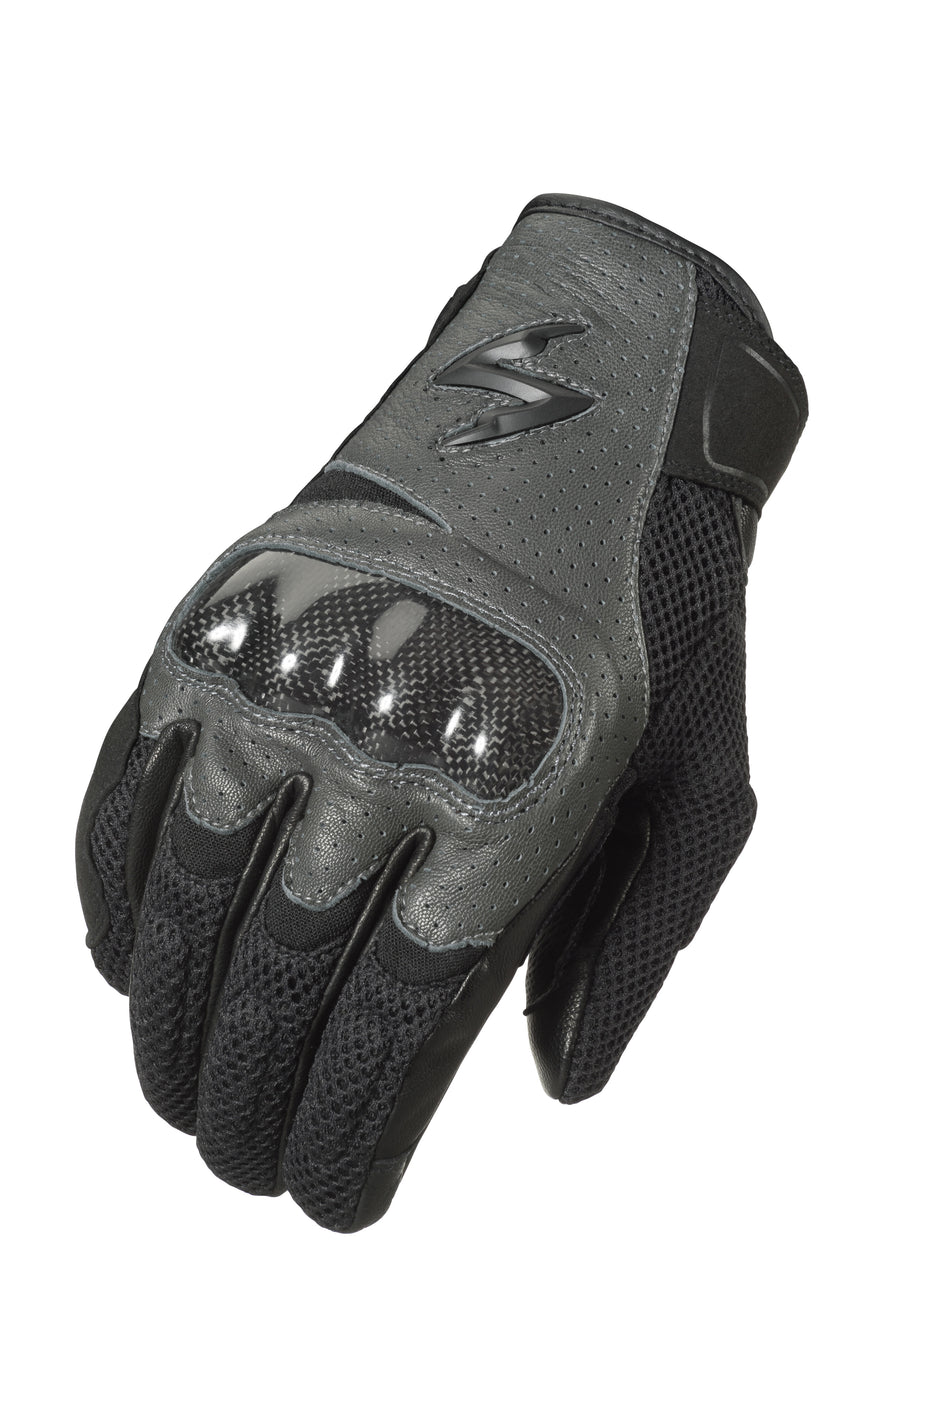 SCORPION EXO Vortex Air Gloves Grey Sm G36-063